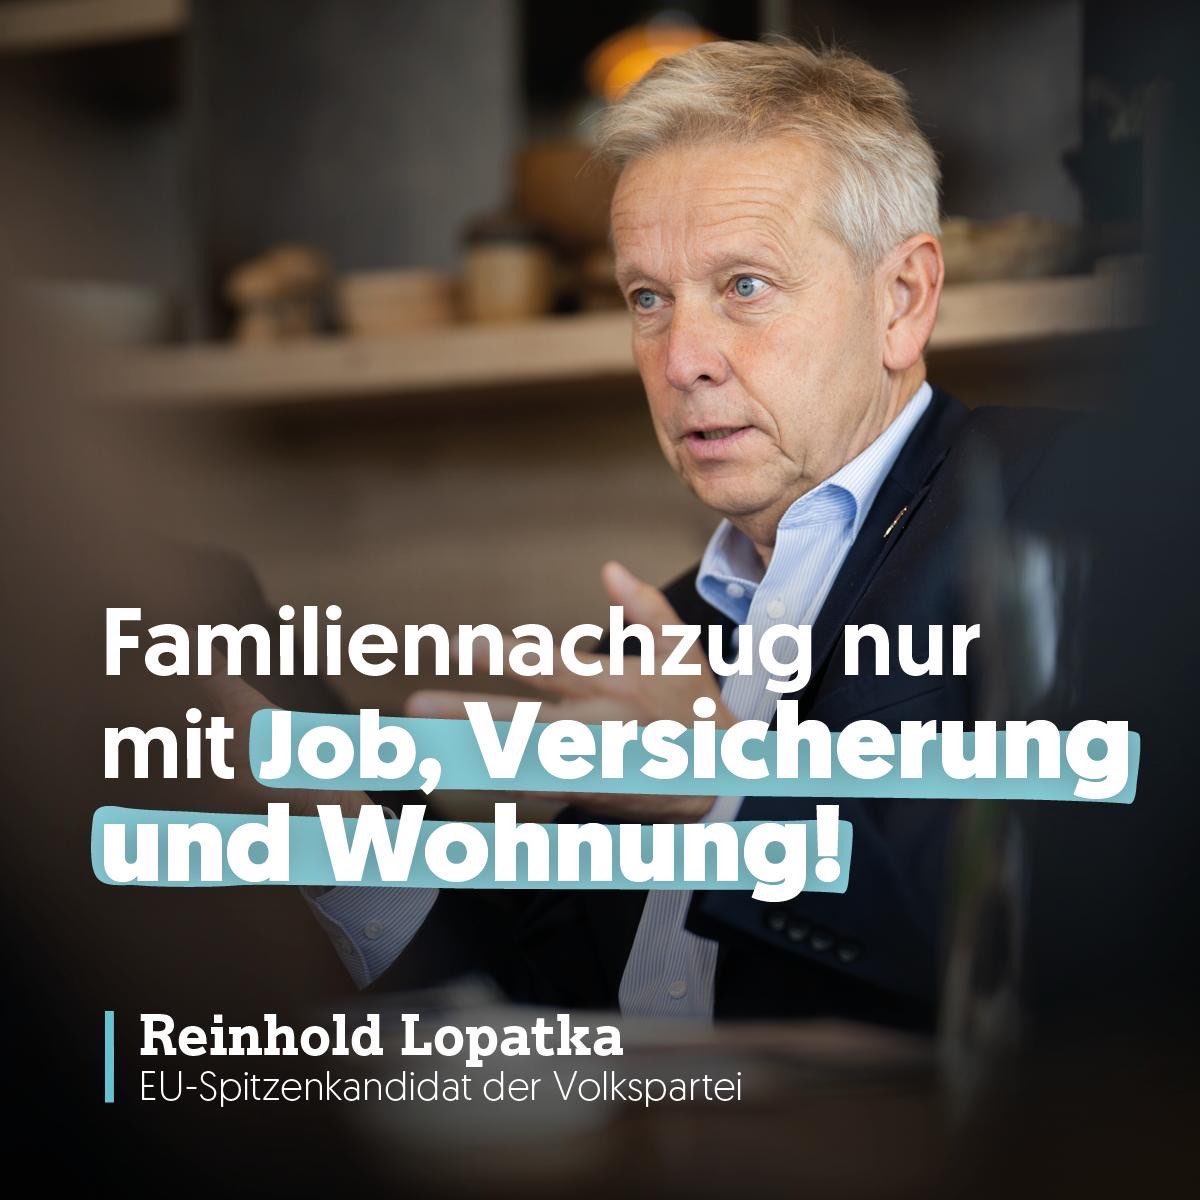 Für unseren EU-Spitzenkandidaten @ReinholdLopatka steht fest: Wer seine Familie nach Österreich holen möchte, muss sie selbst erhalten. Konkret braucht es: Ein Einkommen aus Arbeit in ausreichender Höhe, eine Krankenversicherung und einen entsprechenden Wohnraum. Denn der Zuzug…